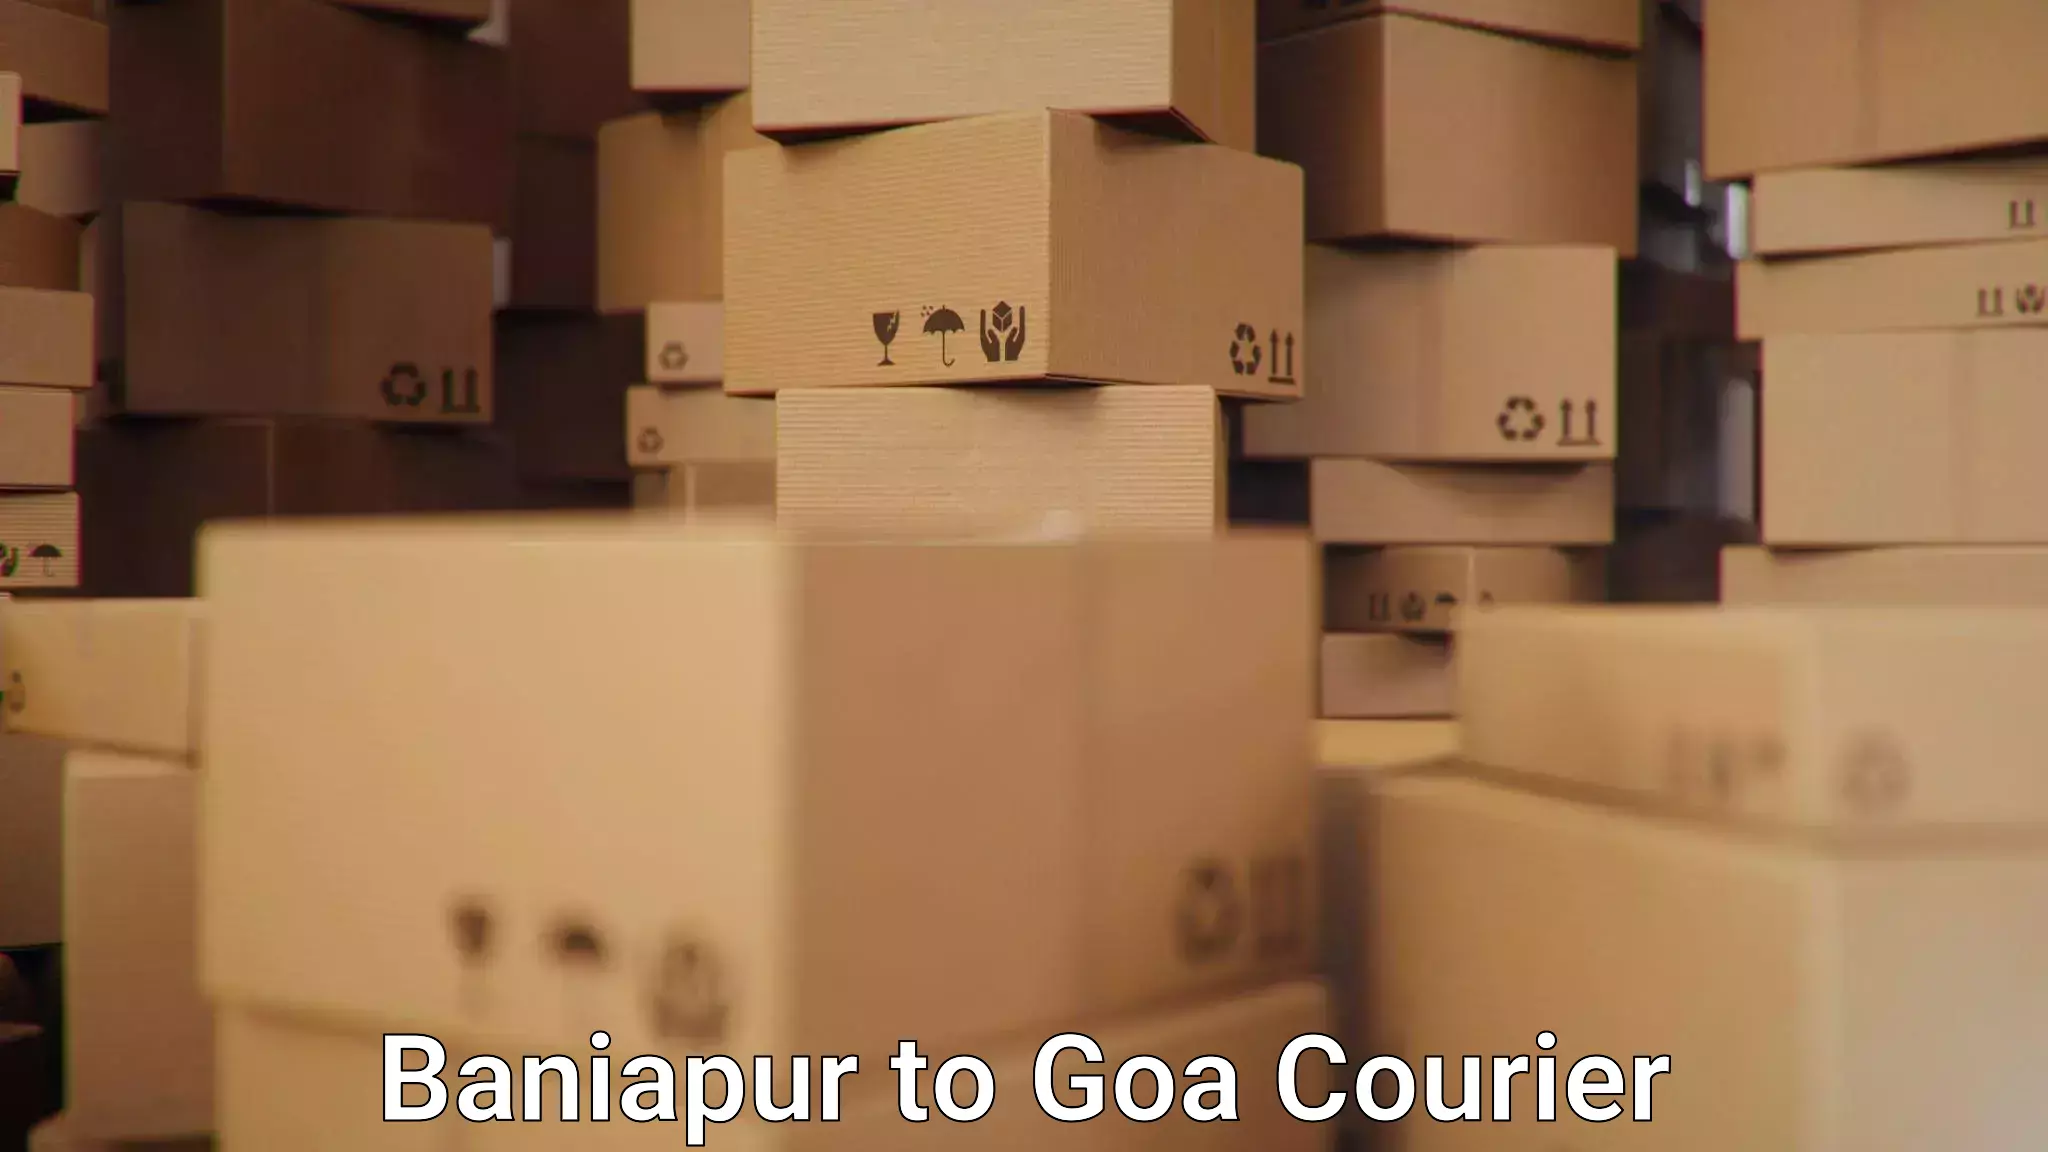 Seamless shipping service Baniapur to Goa